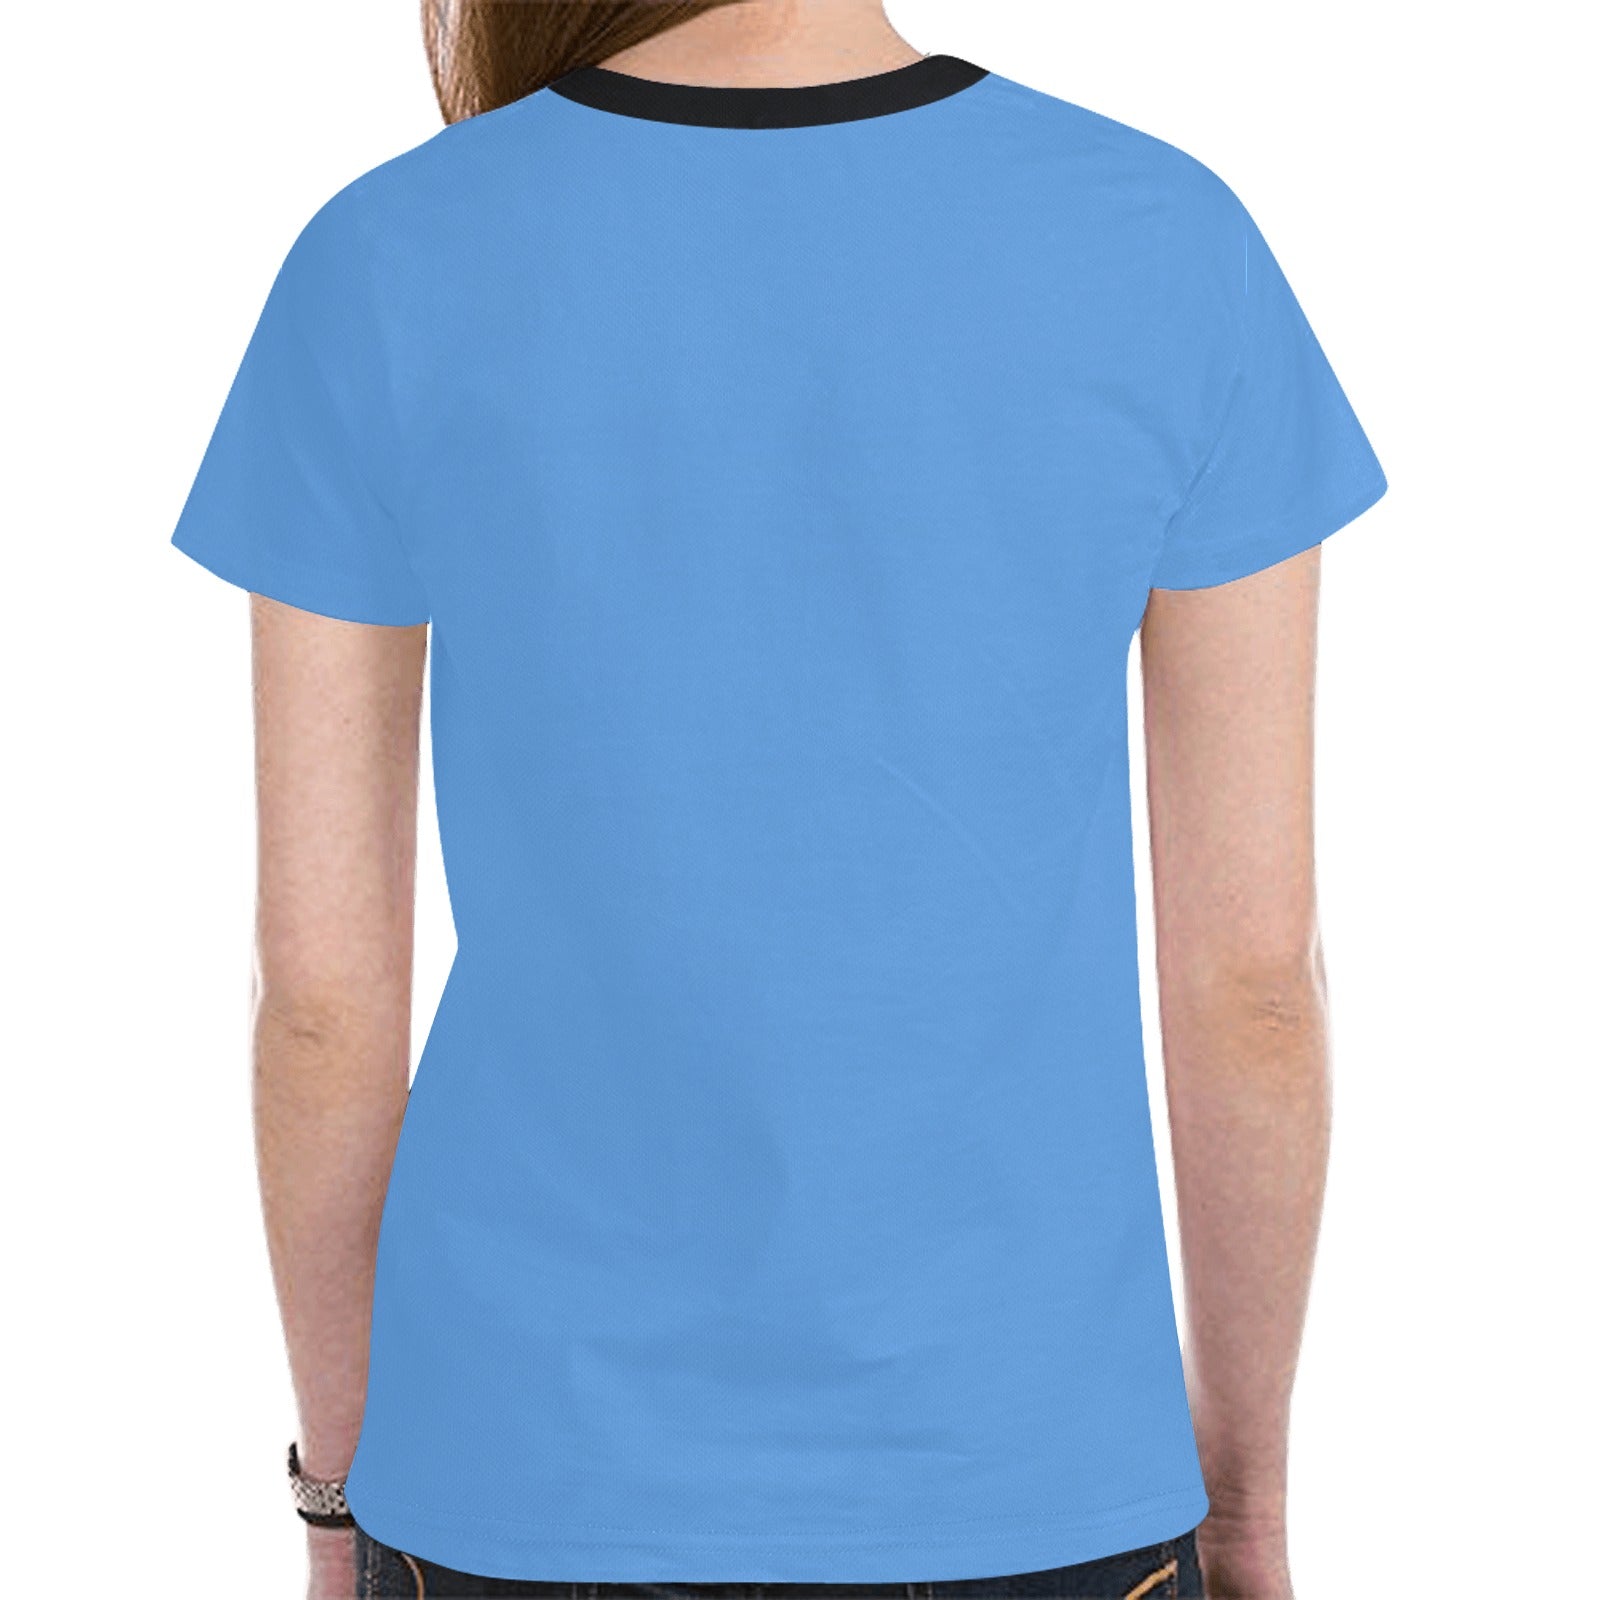 Elk Spirit Guide (Blue) T-shirt for Women